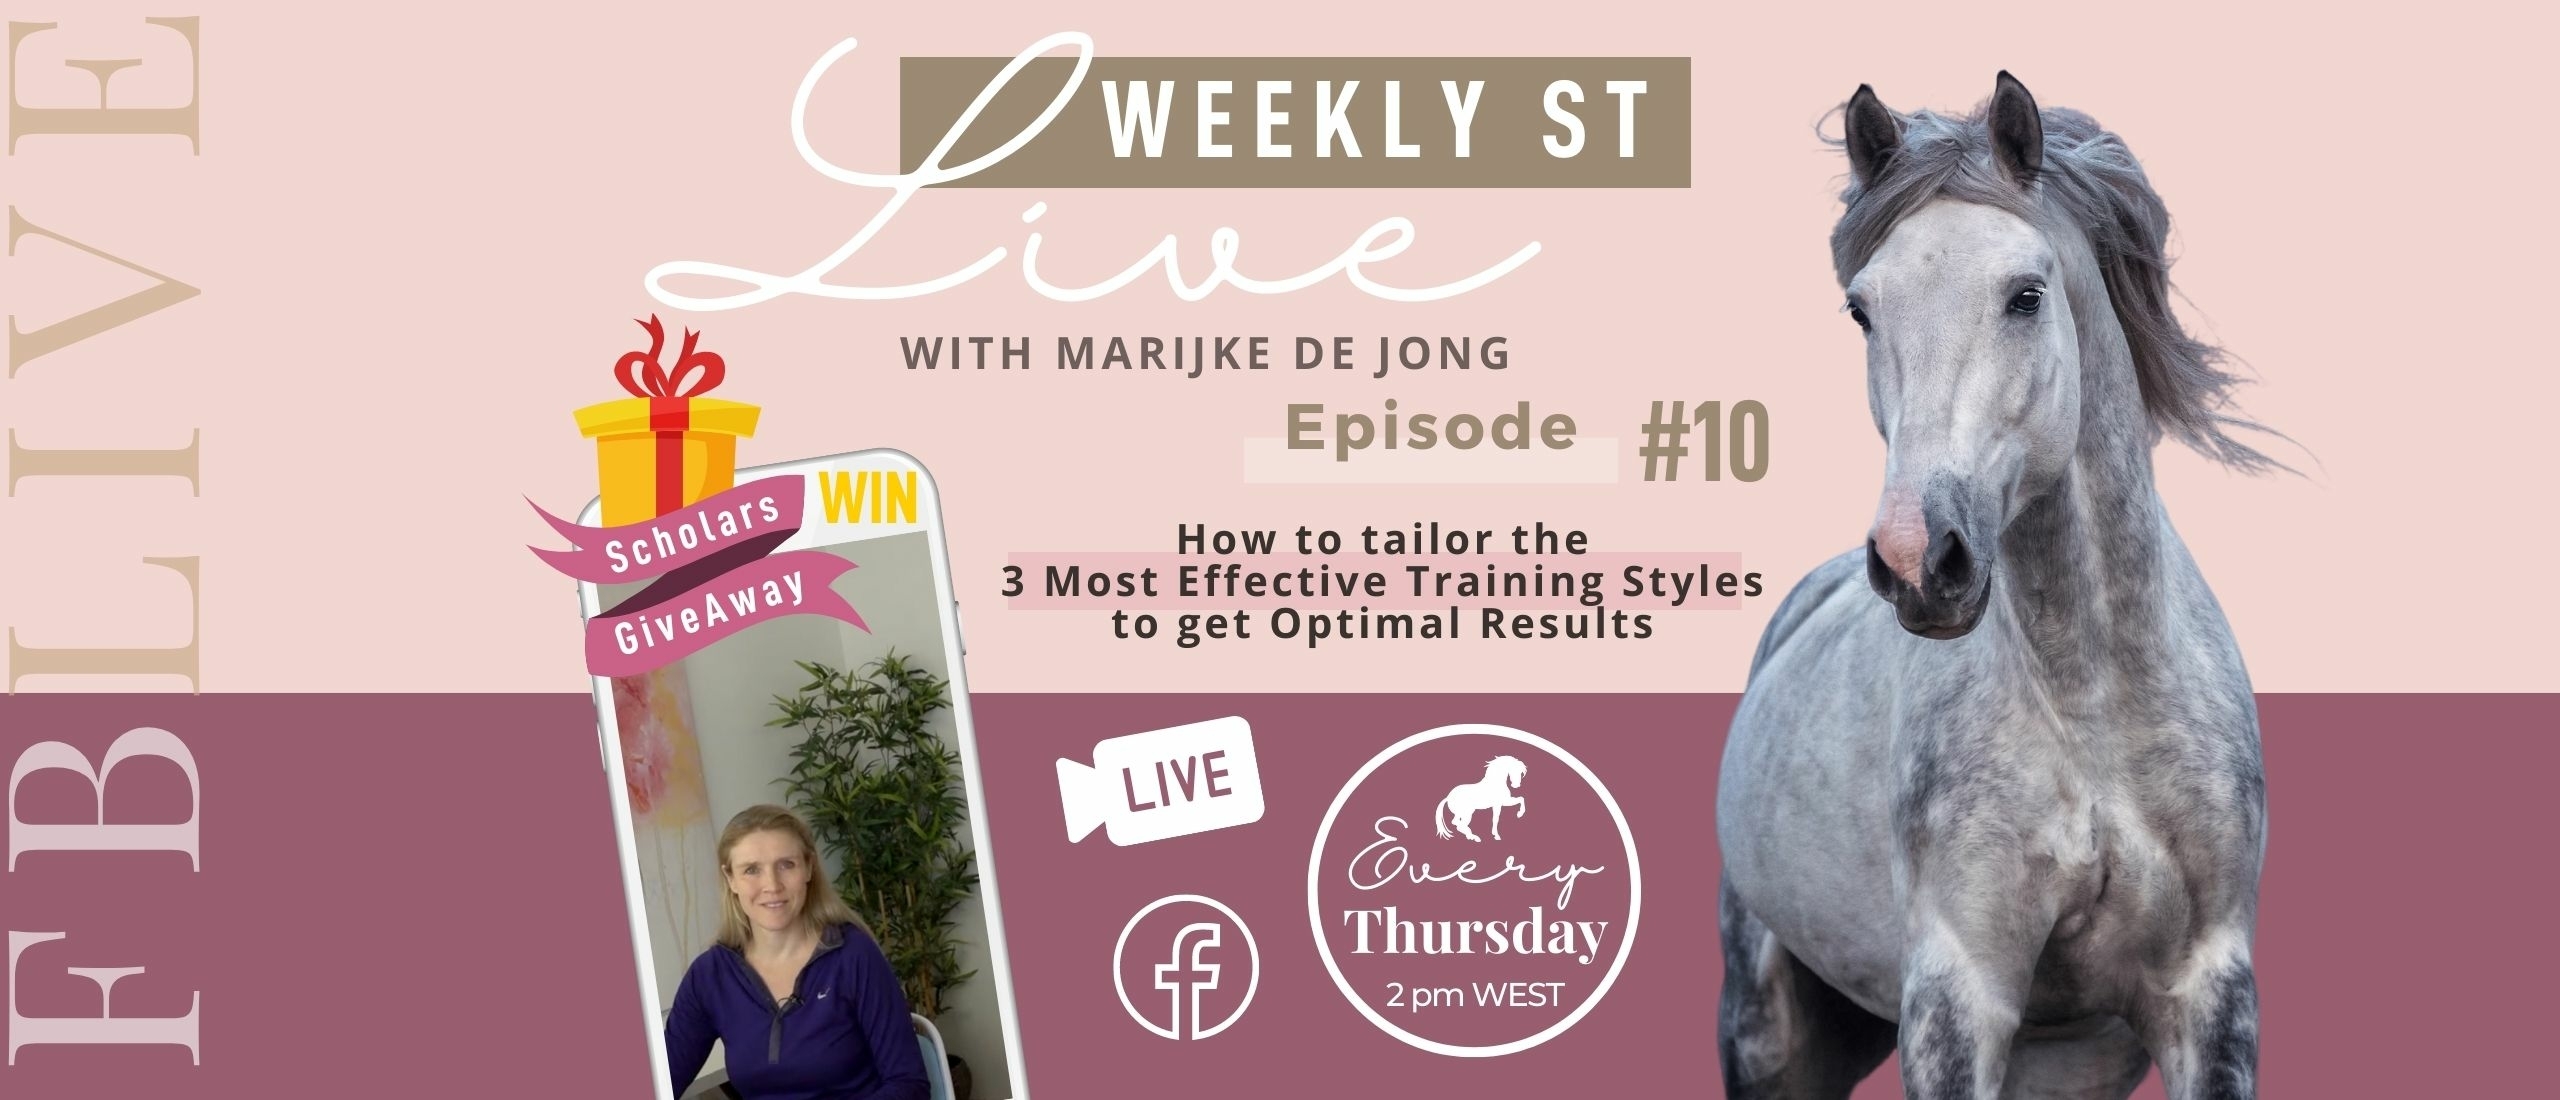 Weekly ST #10 | Marijke de Jong Live